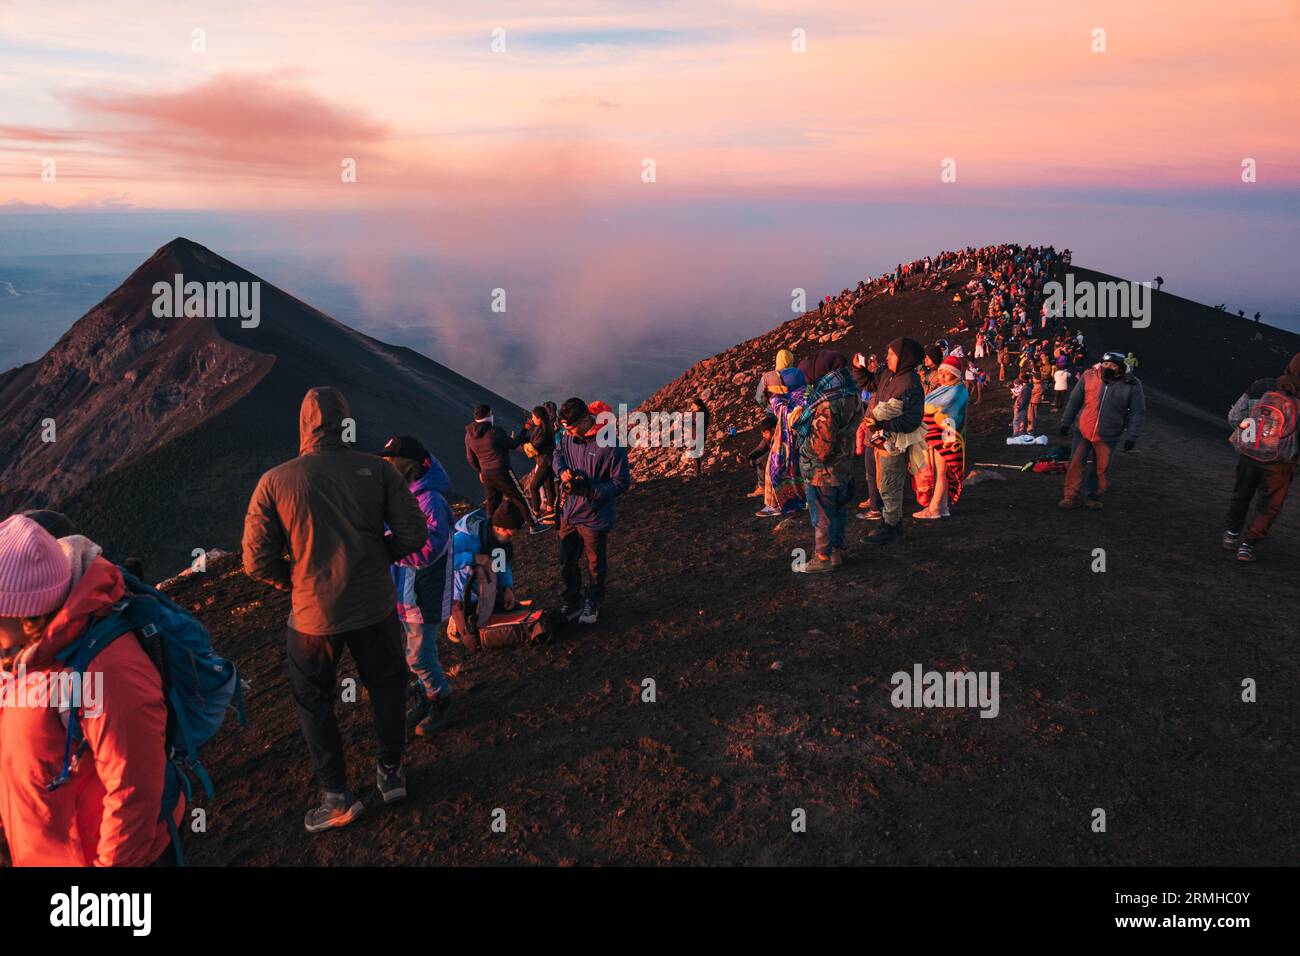 Dutzende von Touristen drängen sich auf den Gipfel des ruhenden Acatenango-Vulkans in Guatemala, um den benachbarten und aktiven Fuego-Vulkan bei Sonnenaufgang zu beobachten Stockfoto